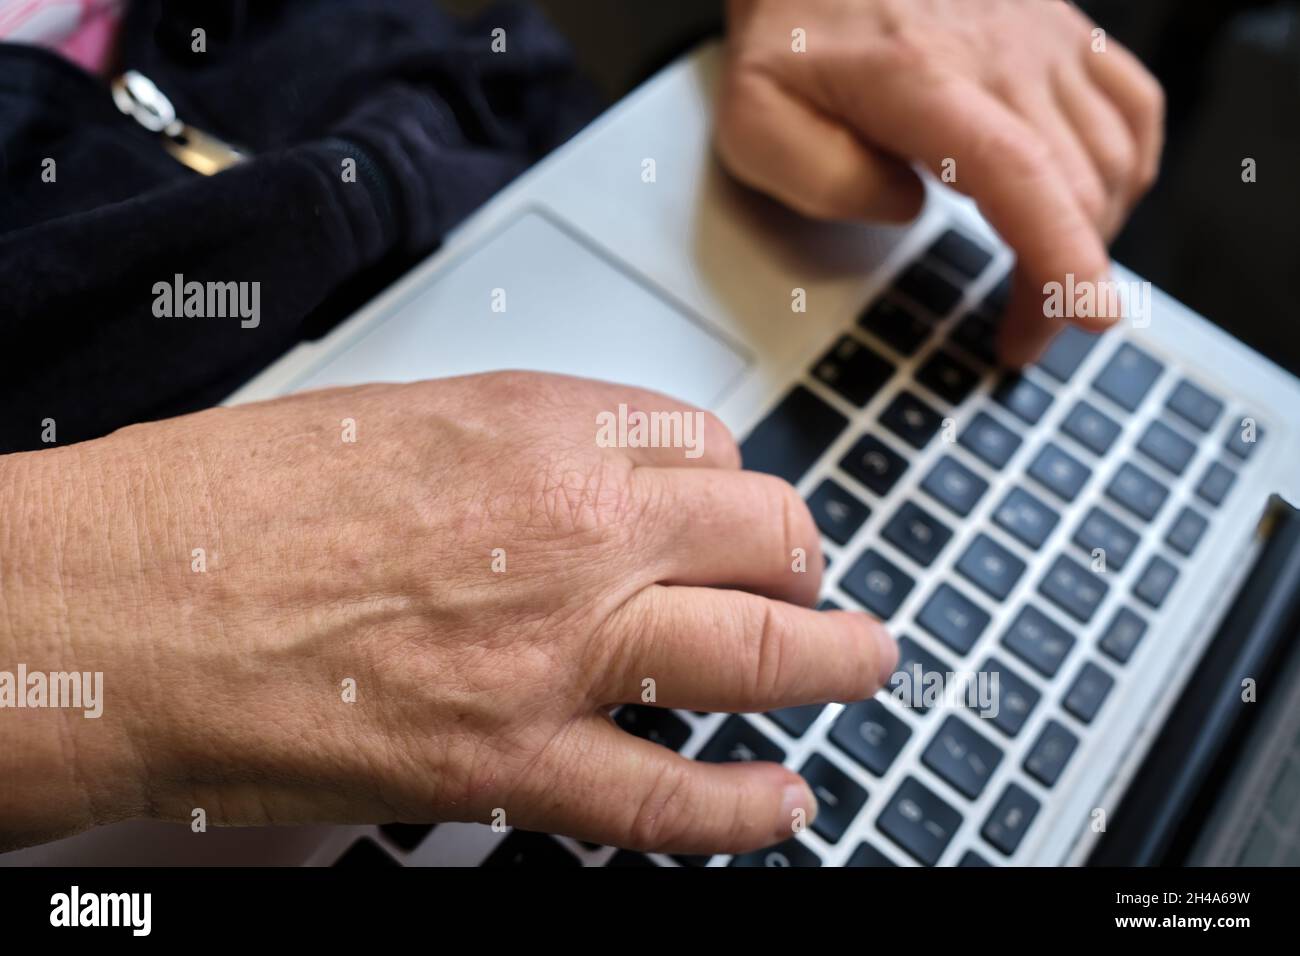 Hände an der Tastatur bei Arbeiten mit dem computer Foto Stock